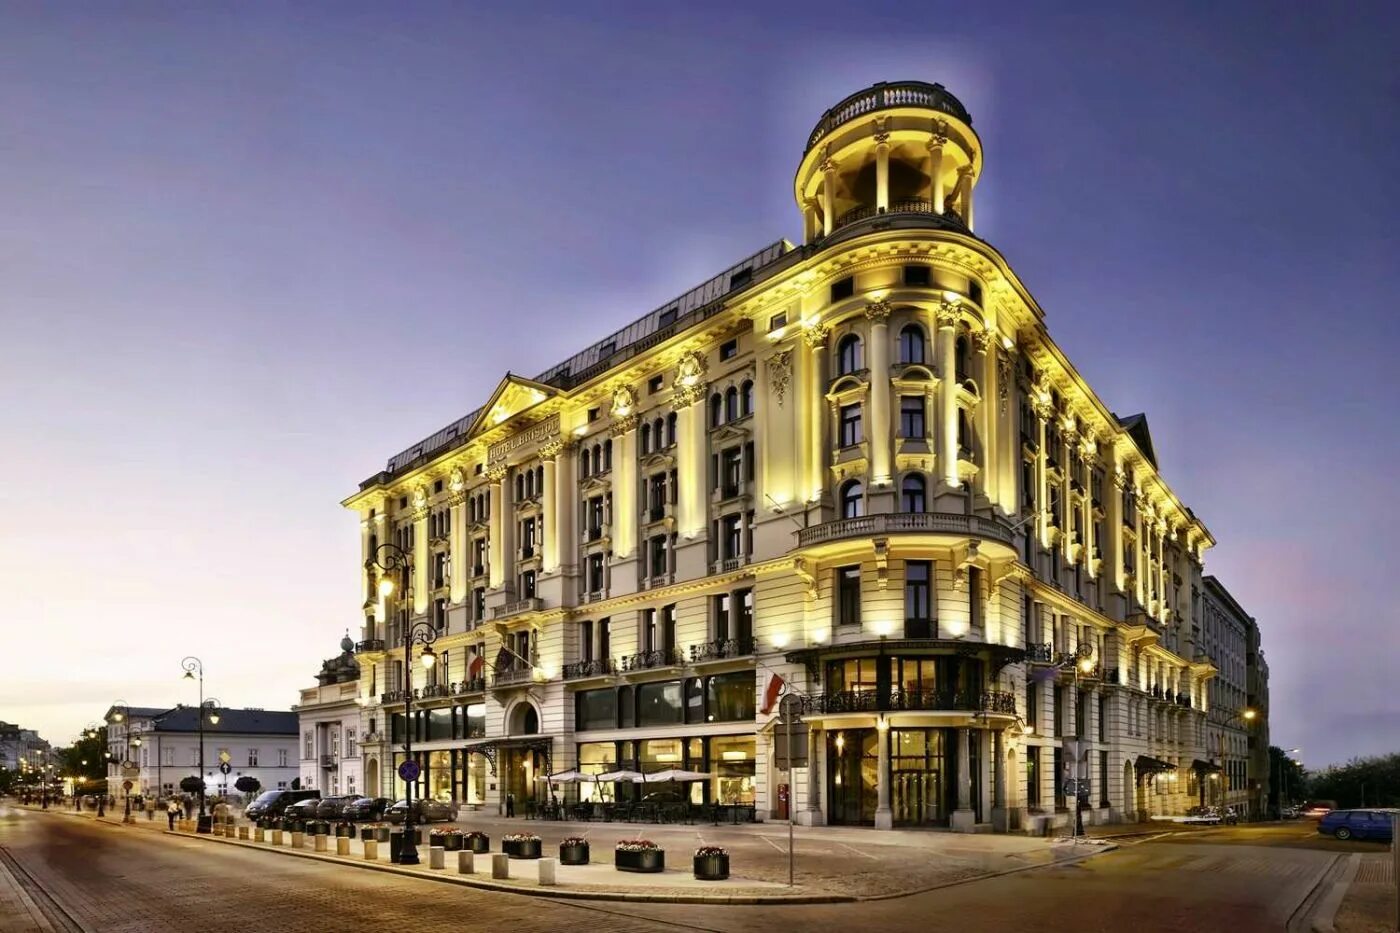 Отель це. Отель Бристоль Варшава. Hotel Bristol, a Luxury collection Hotel, Warsaw. Отель Бристоль Польша. Отель Бристоль в Варшаве 19 век.